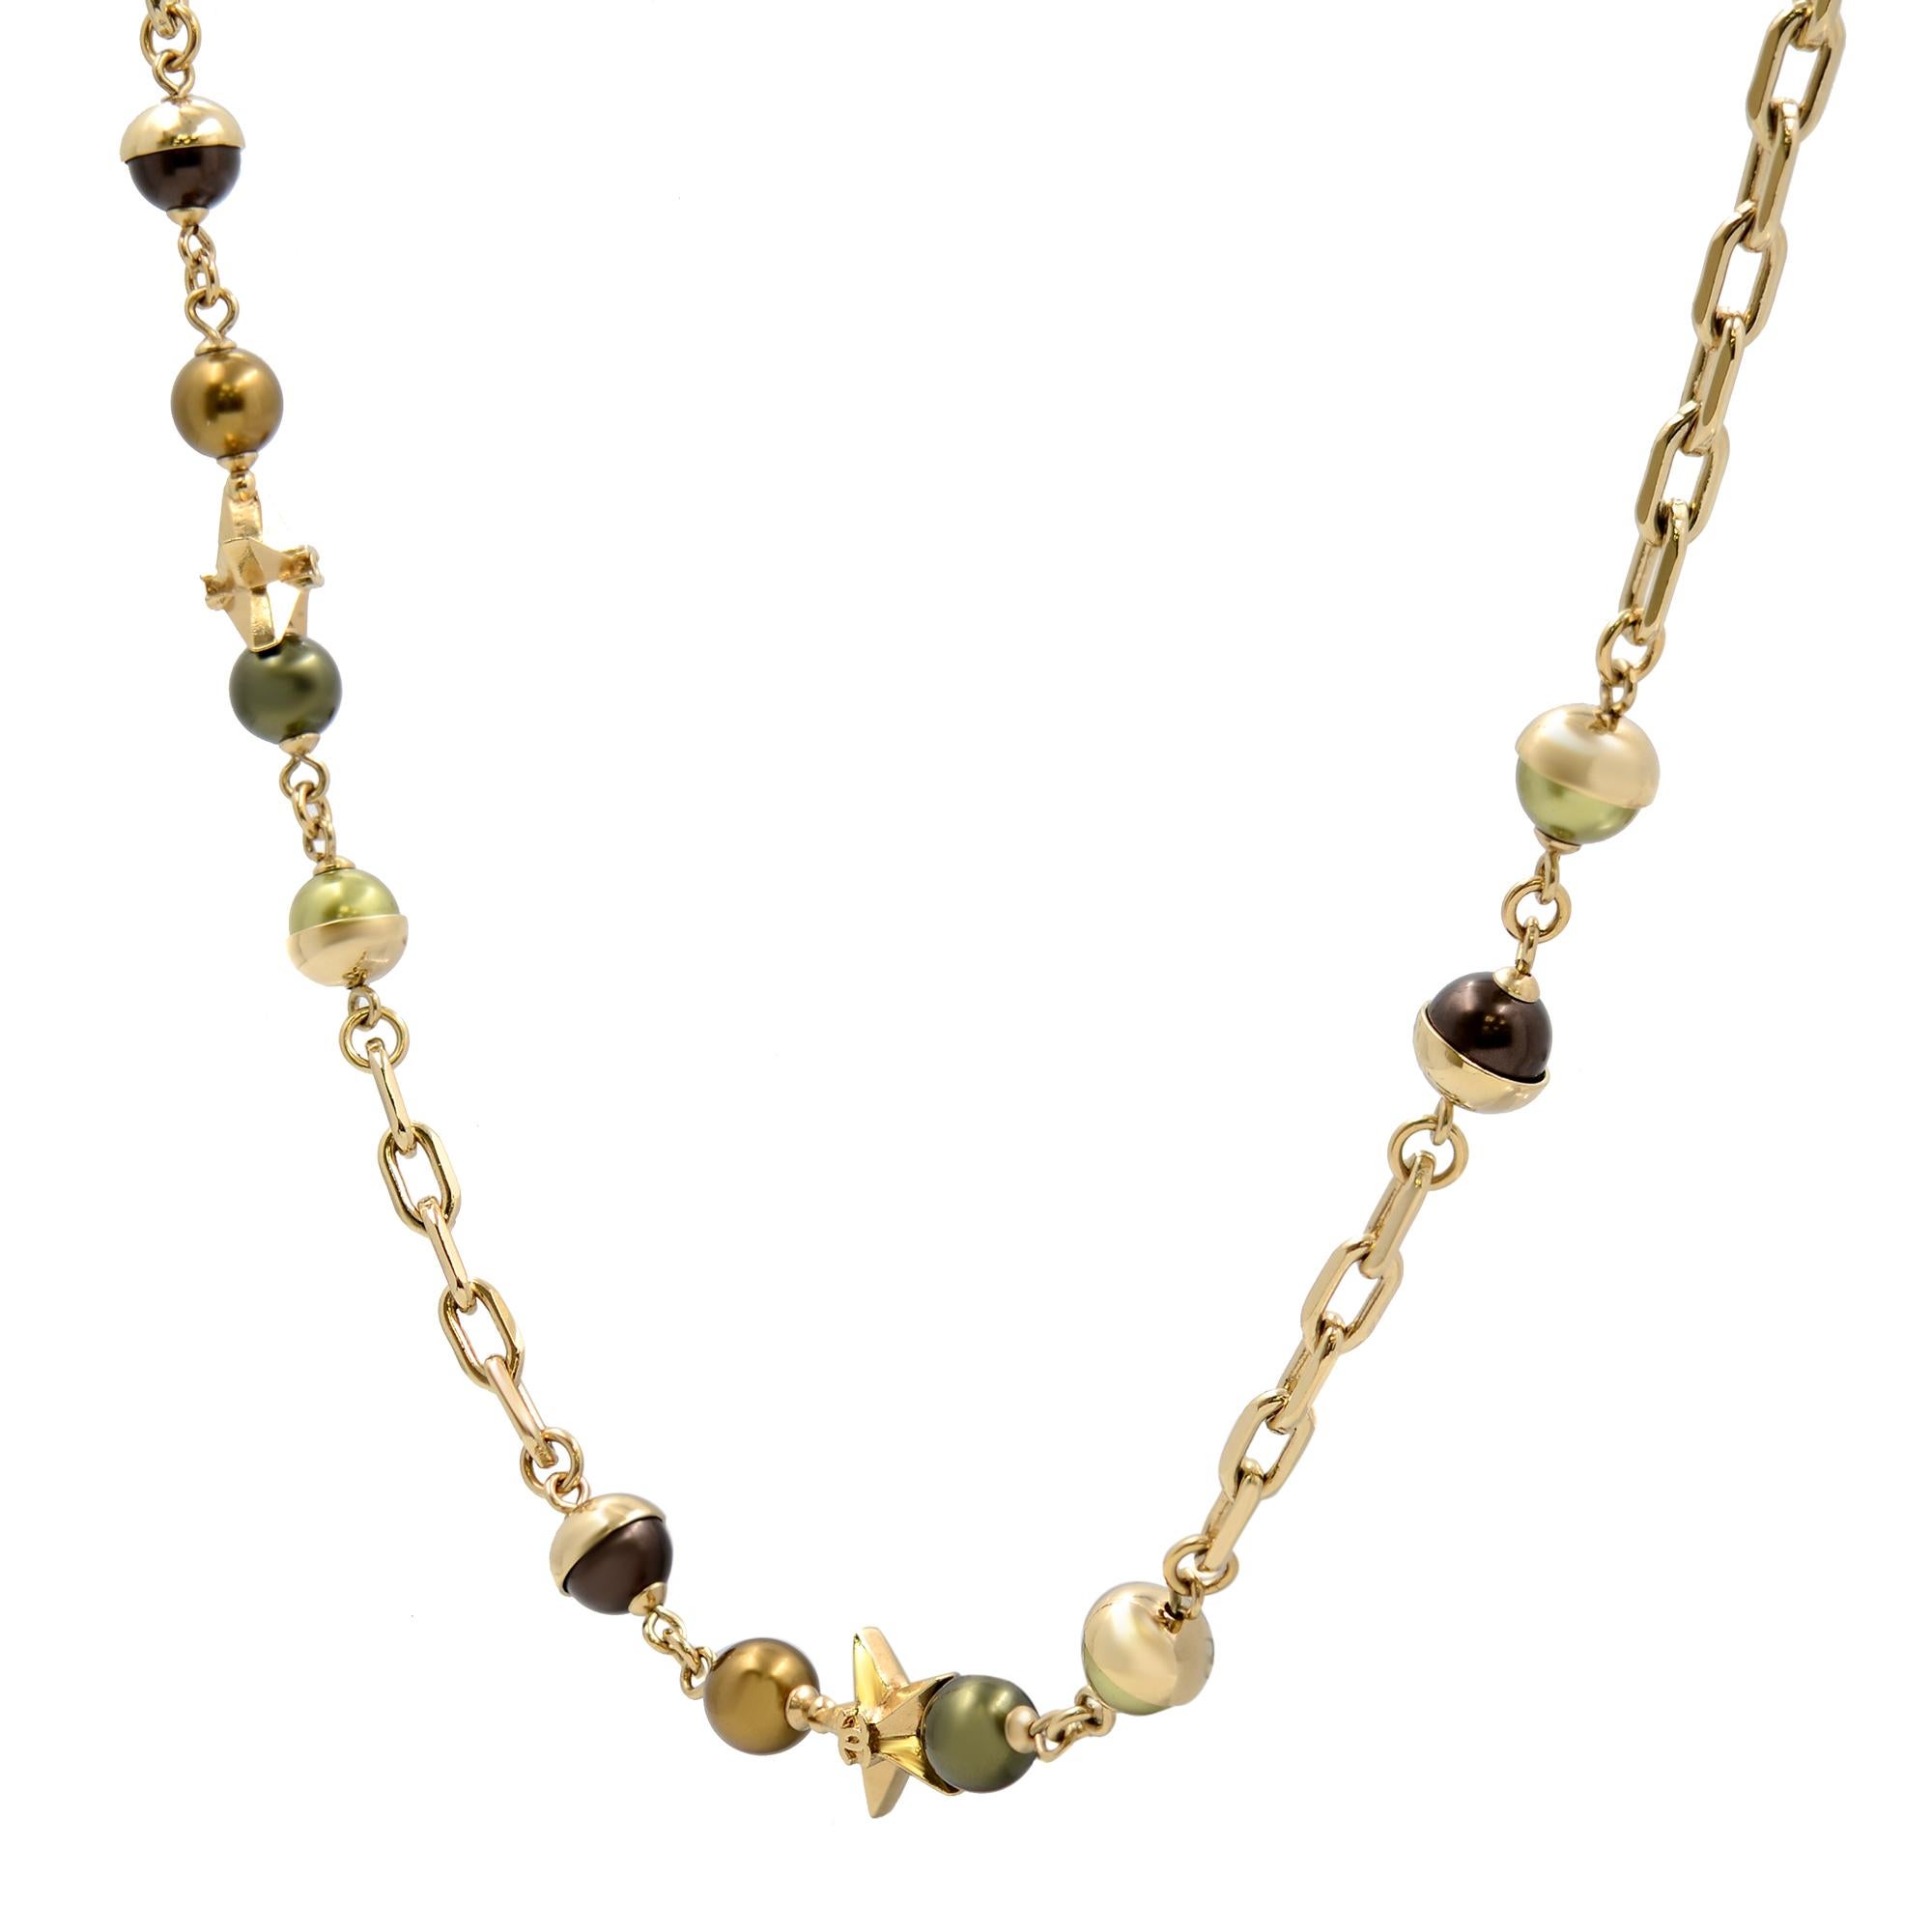 Chanel gold CC Logo Stern olivbraun Perle lange Halskette in Goldton. Hergestellt in Frankreich. Länge der Halskette: 44 Zoll. Ein sehr klassisches vergoldetes Stück. Ausgezeichneter gebrauchter Zustand. Originalverpackung und Papiere sind nicht